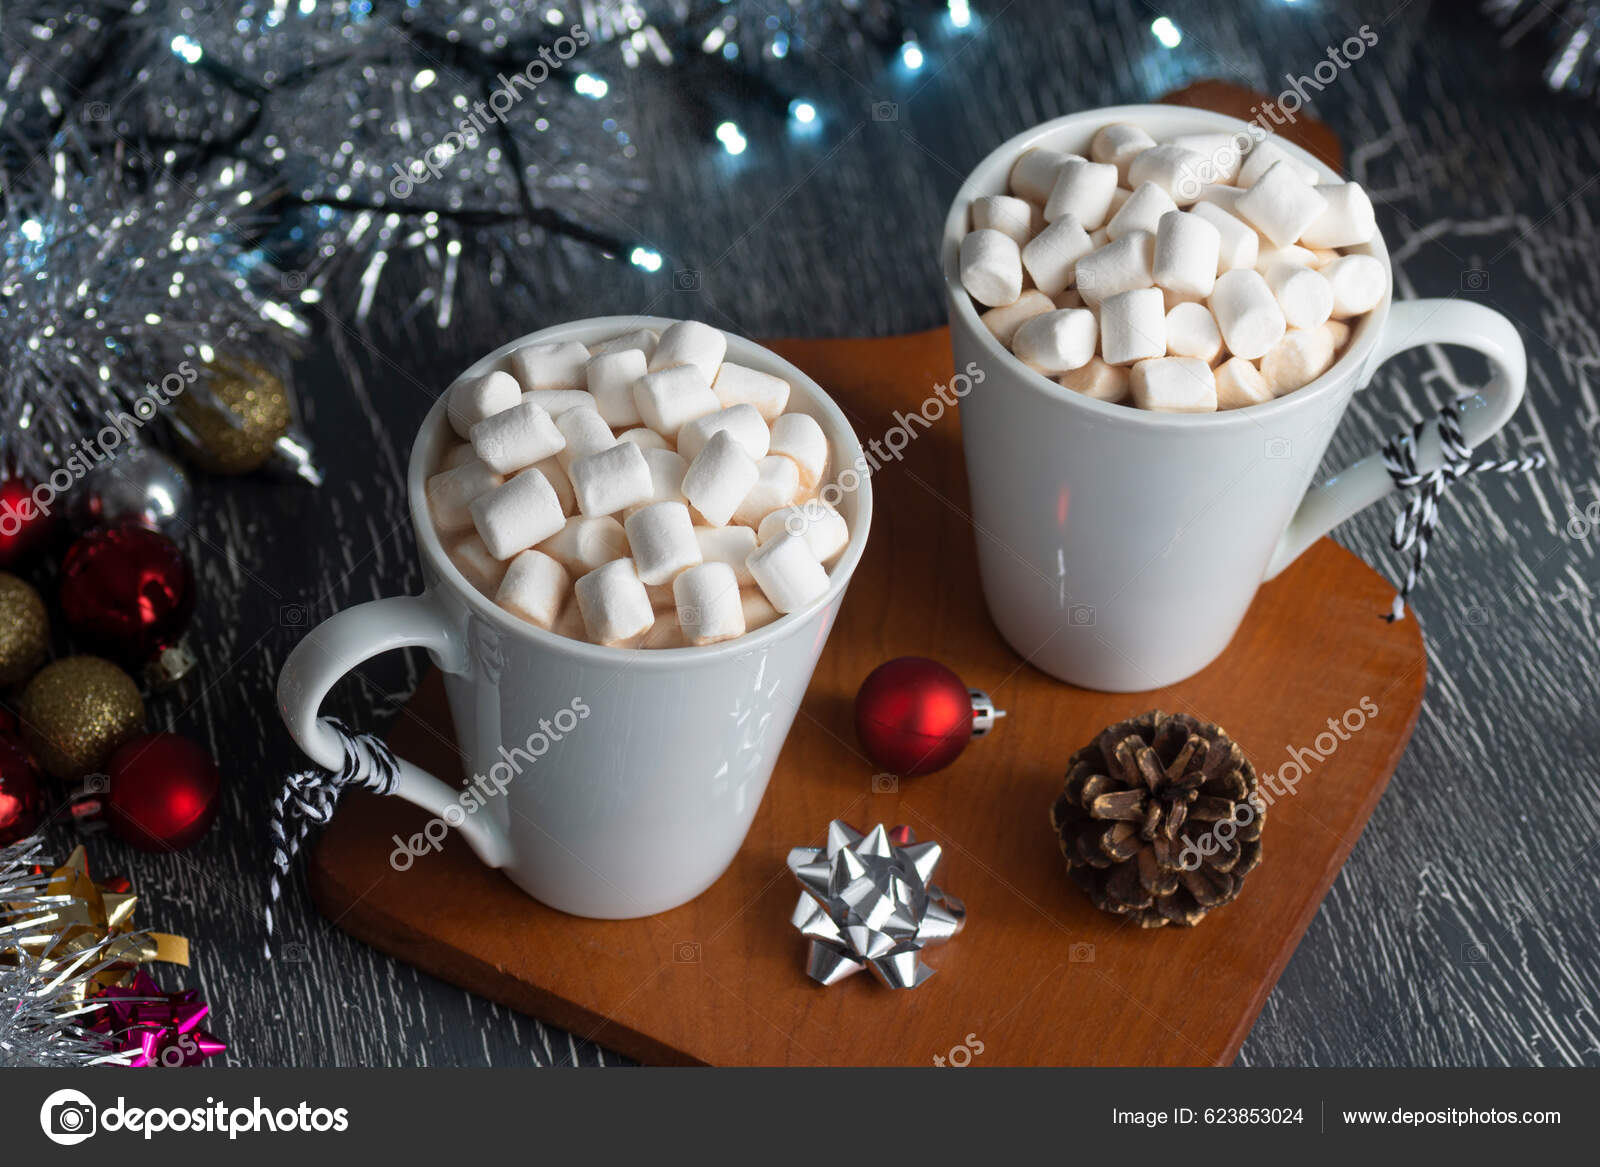 Two Coffee/Hot Chocolate Mugs